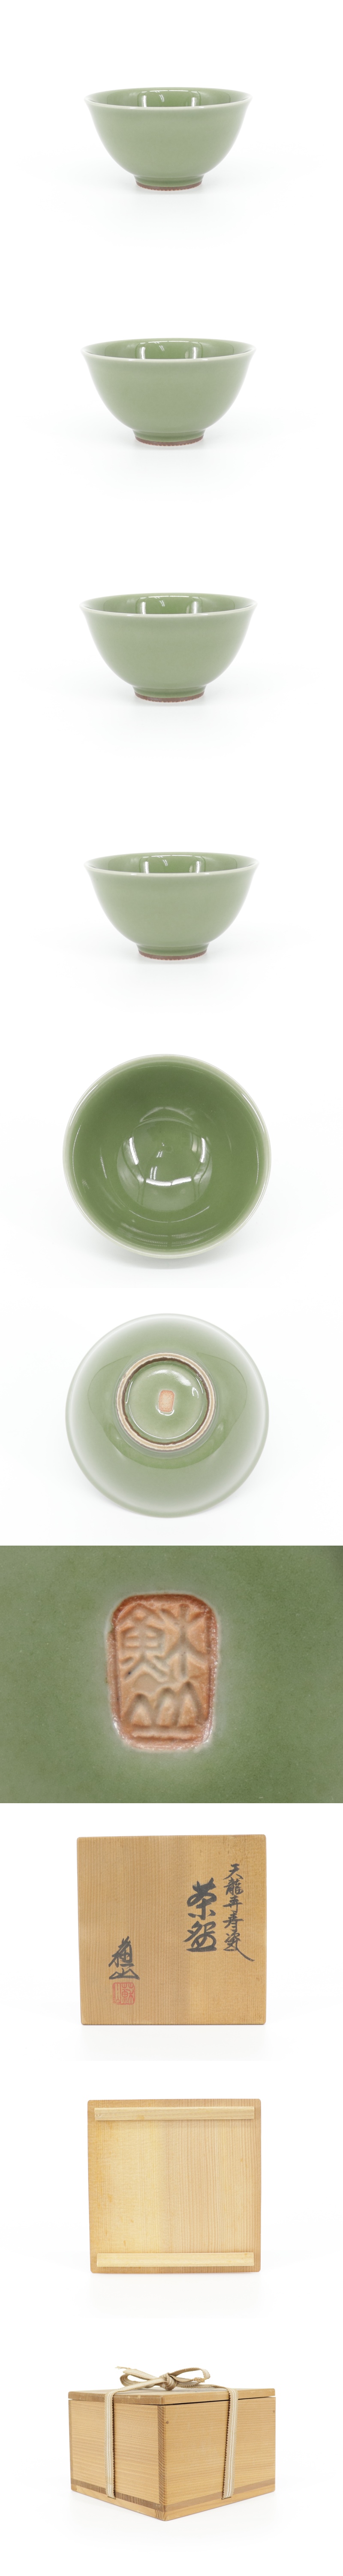 通販質屋青磁 諏訪蘇山 造 茶碗 茶道具 天龍寺青磁 共箱 共布 本物保証 Y493 茶道具